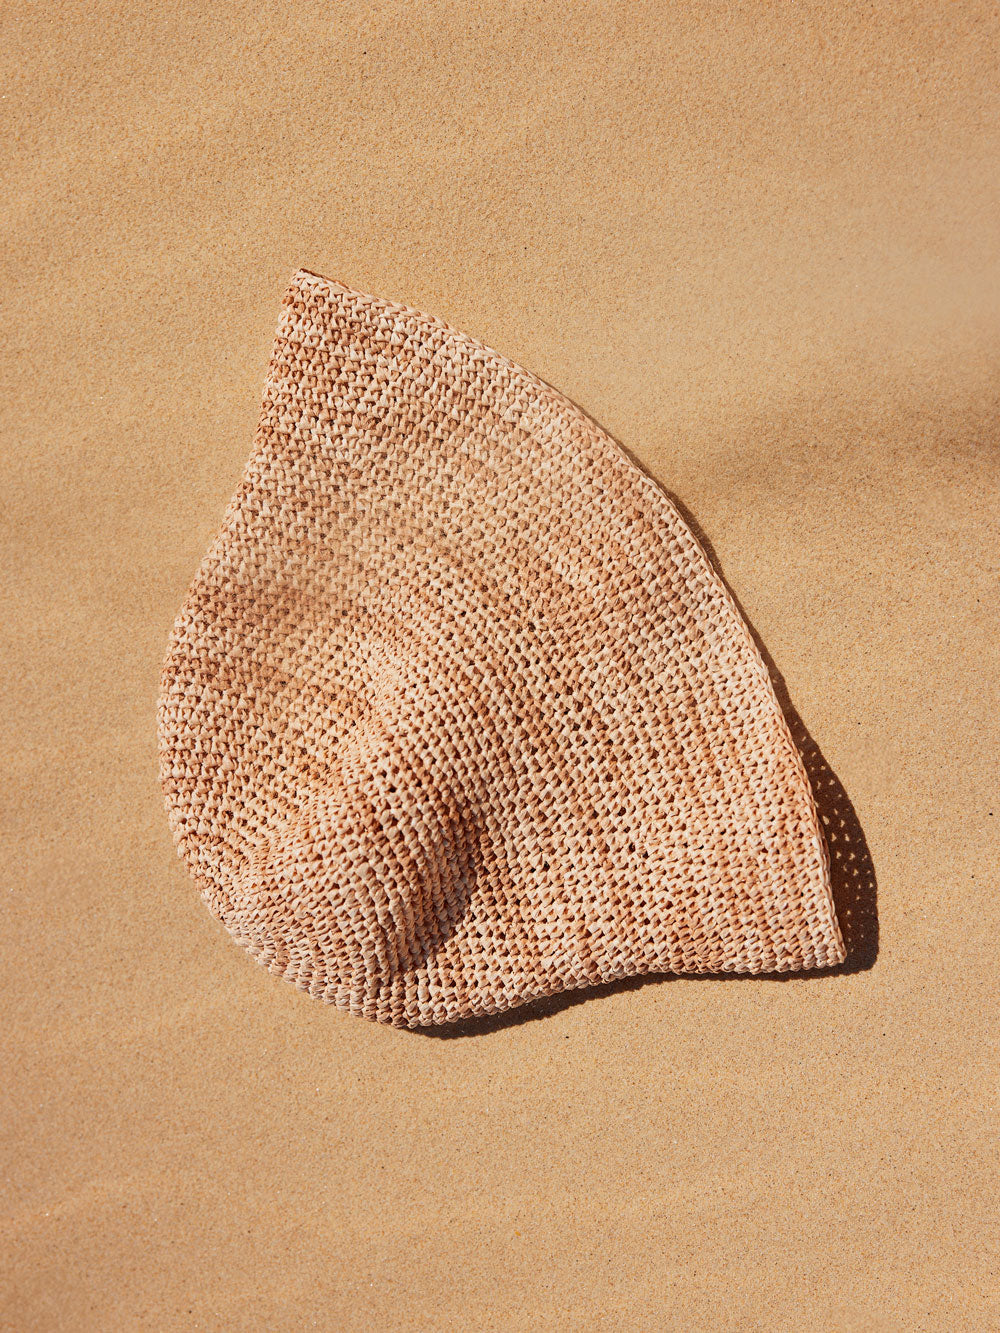 Ivy Raffia Bucket Hat Crochet Kit in Sea Shell